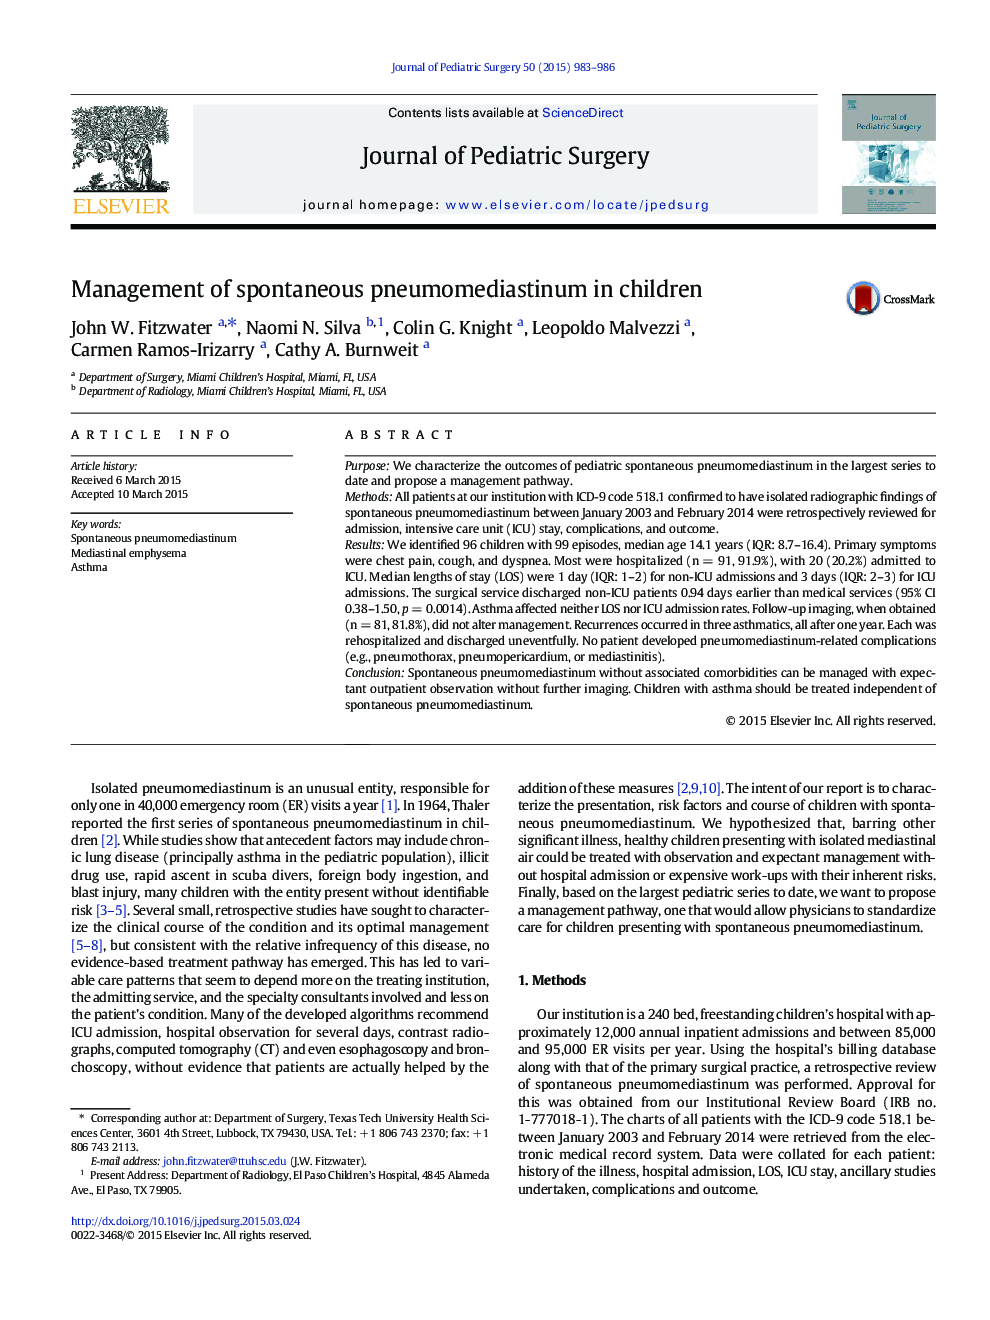 Management of spontaneous pneumomediastinum in children